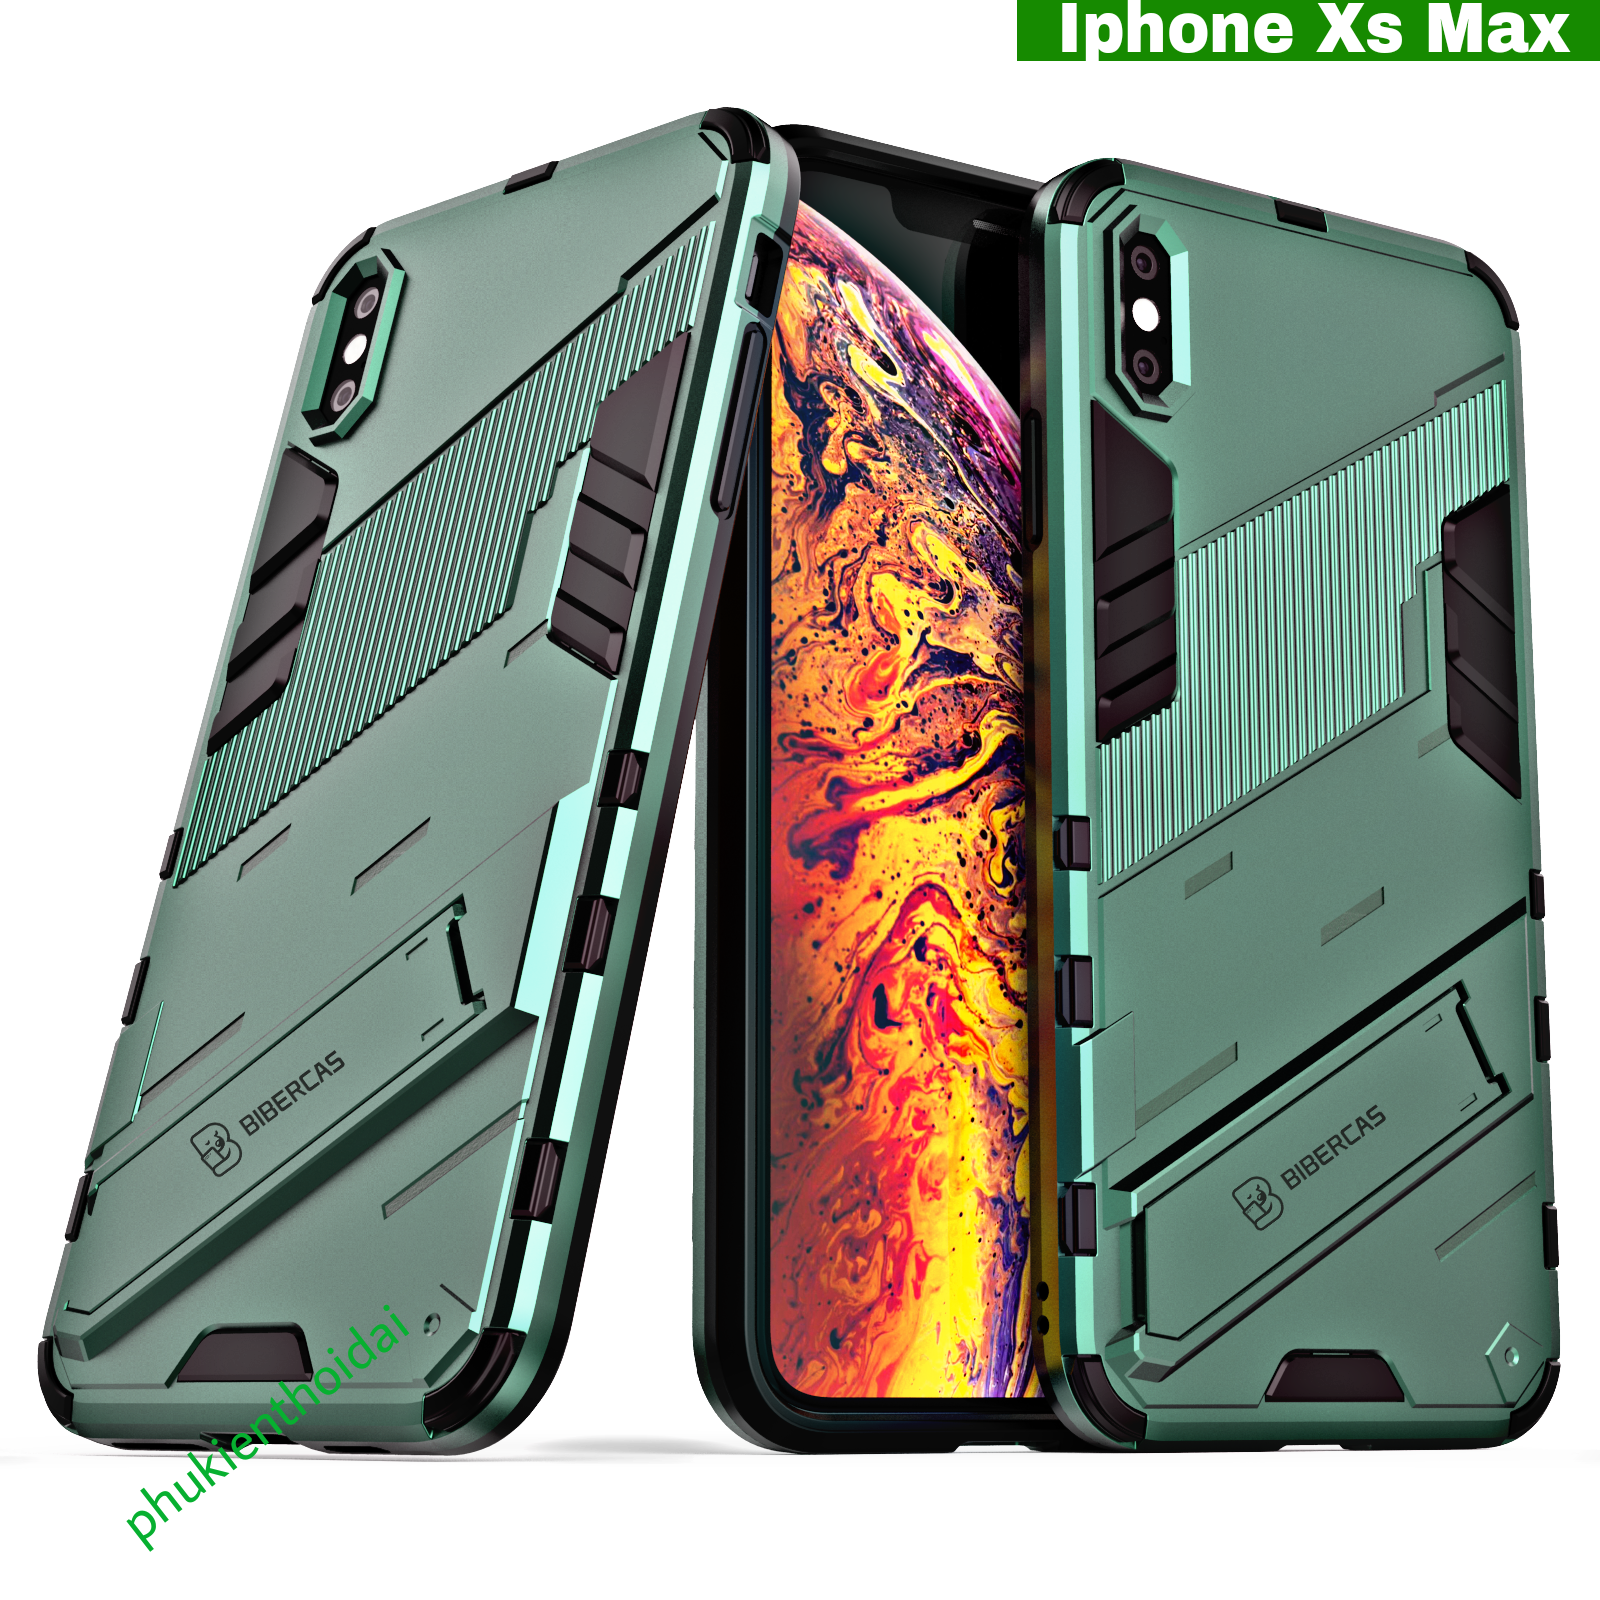 Ốp lưng Iphone Xs Max Iron Man Ver 2 chống sốc giá đỡ xem phim